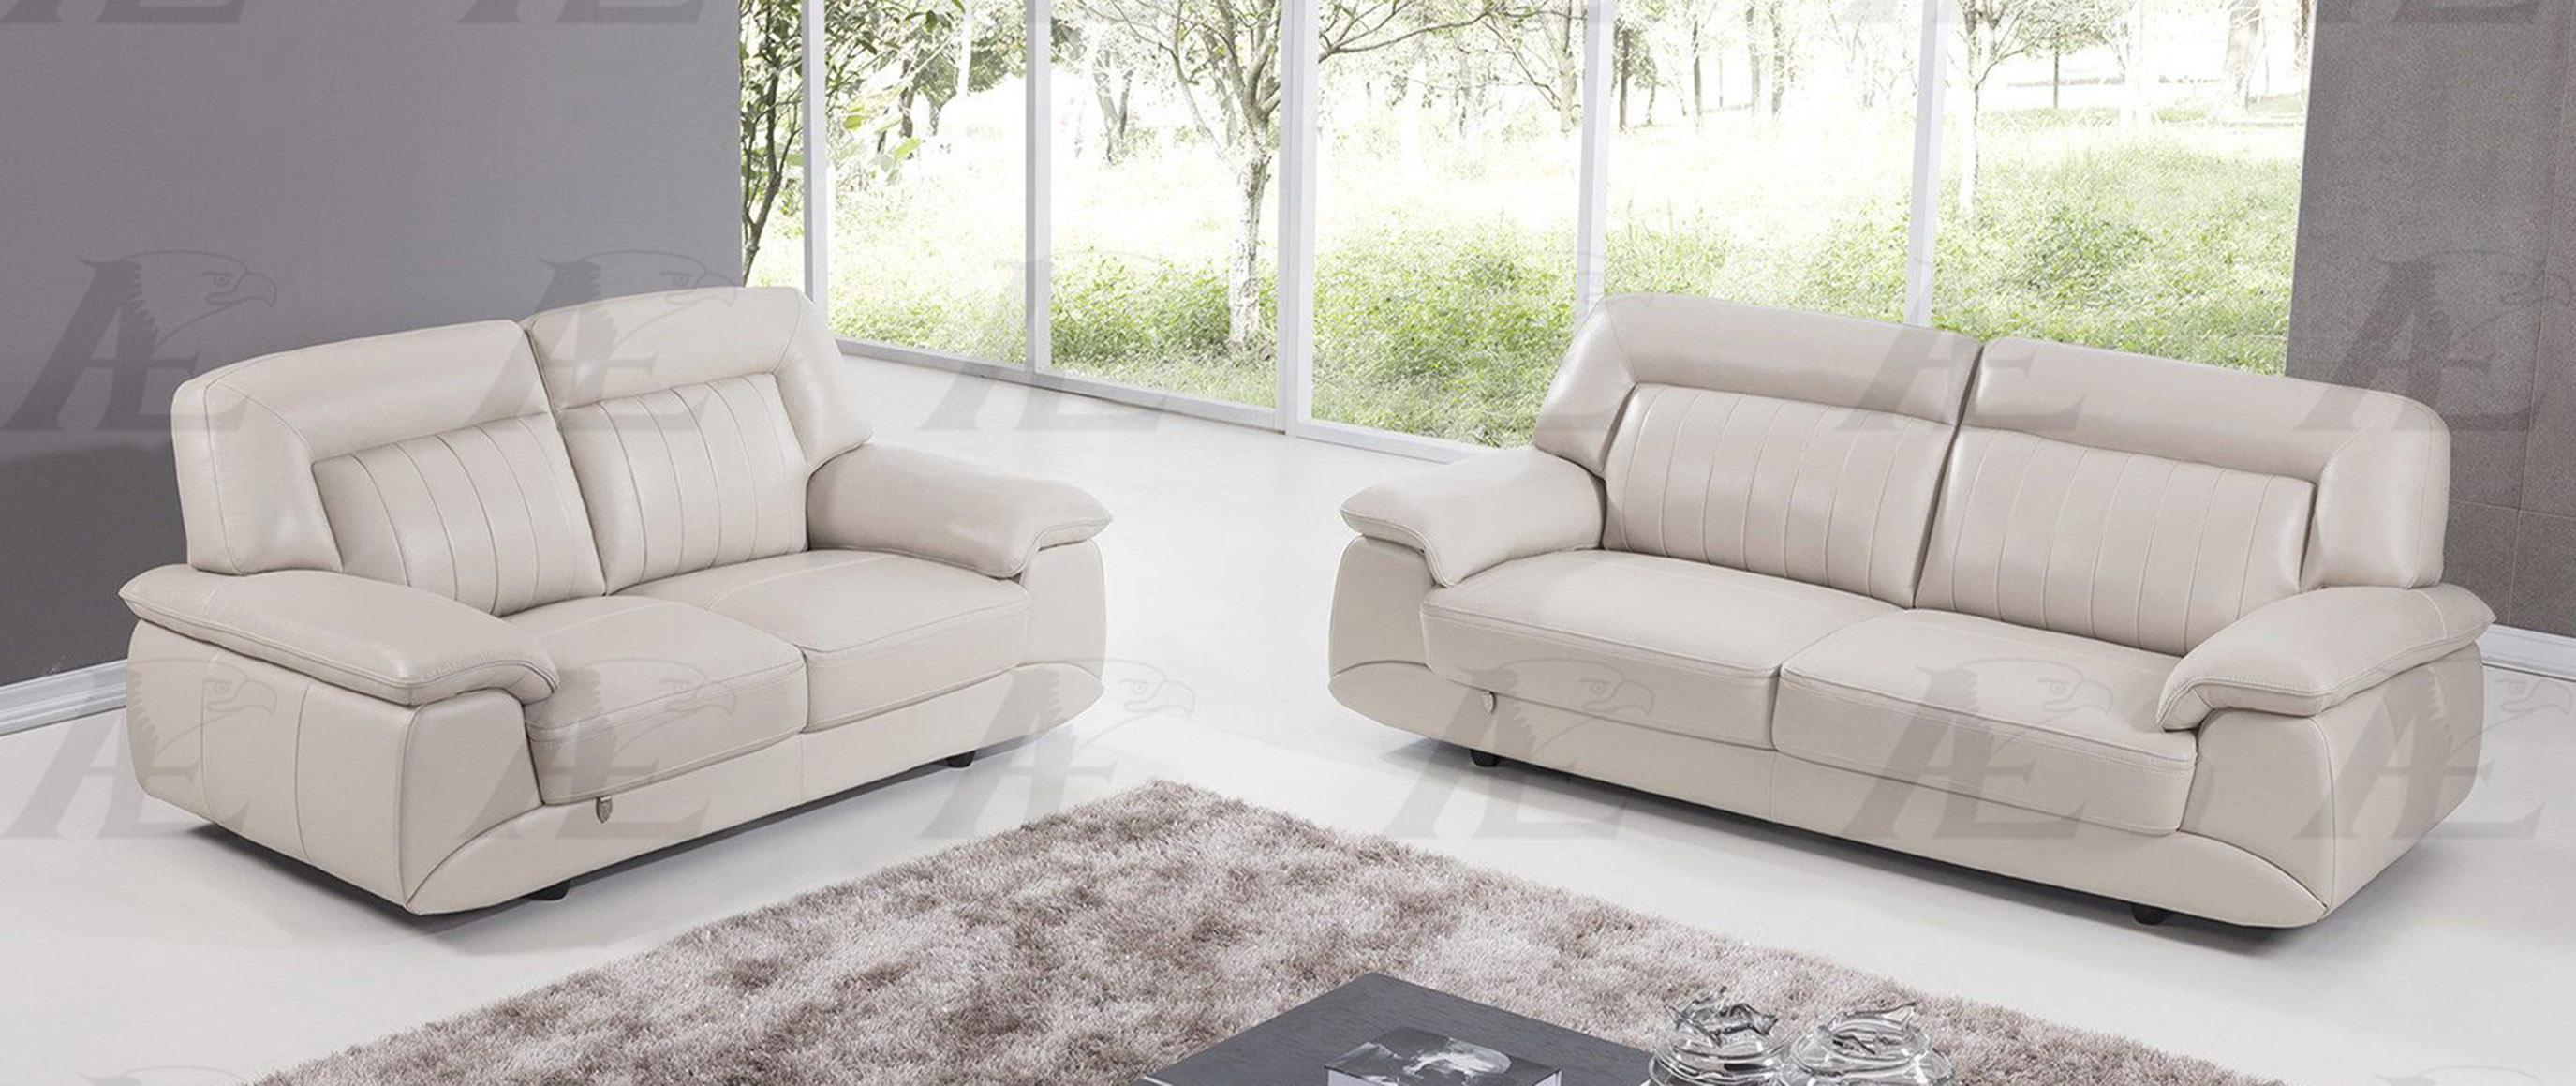 Modern Sofa and Loveseat Set EK072-LG EK072-LG Set-2 in Light Gray Italian Leather